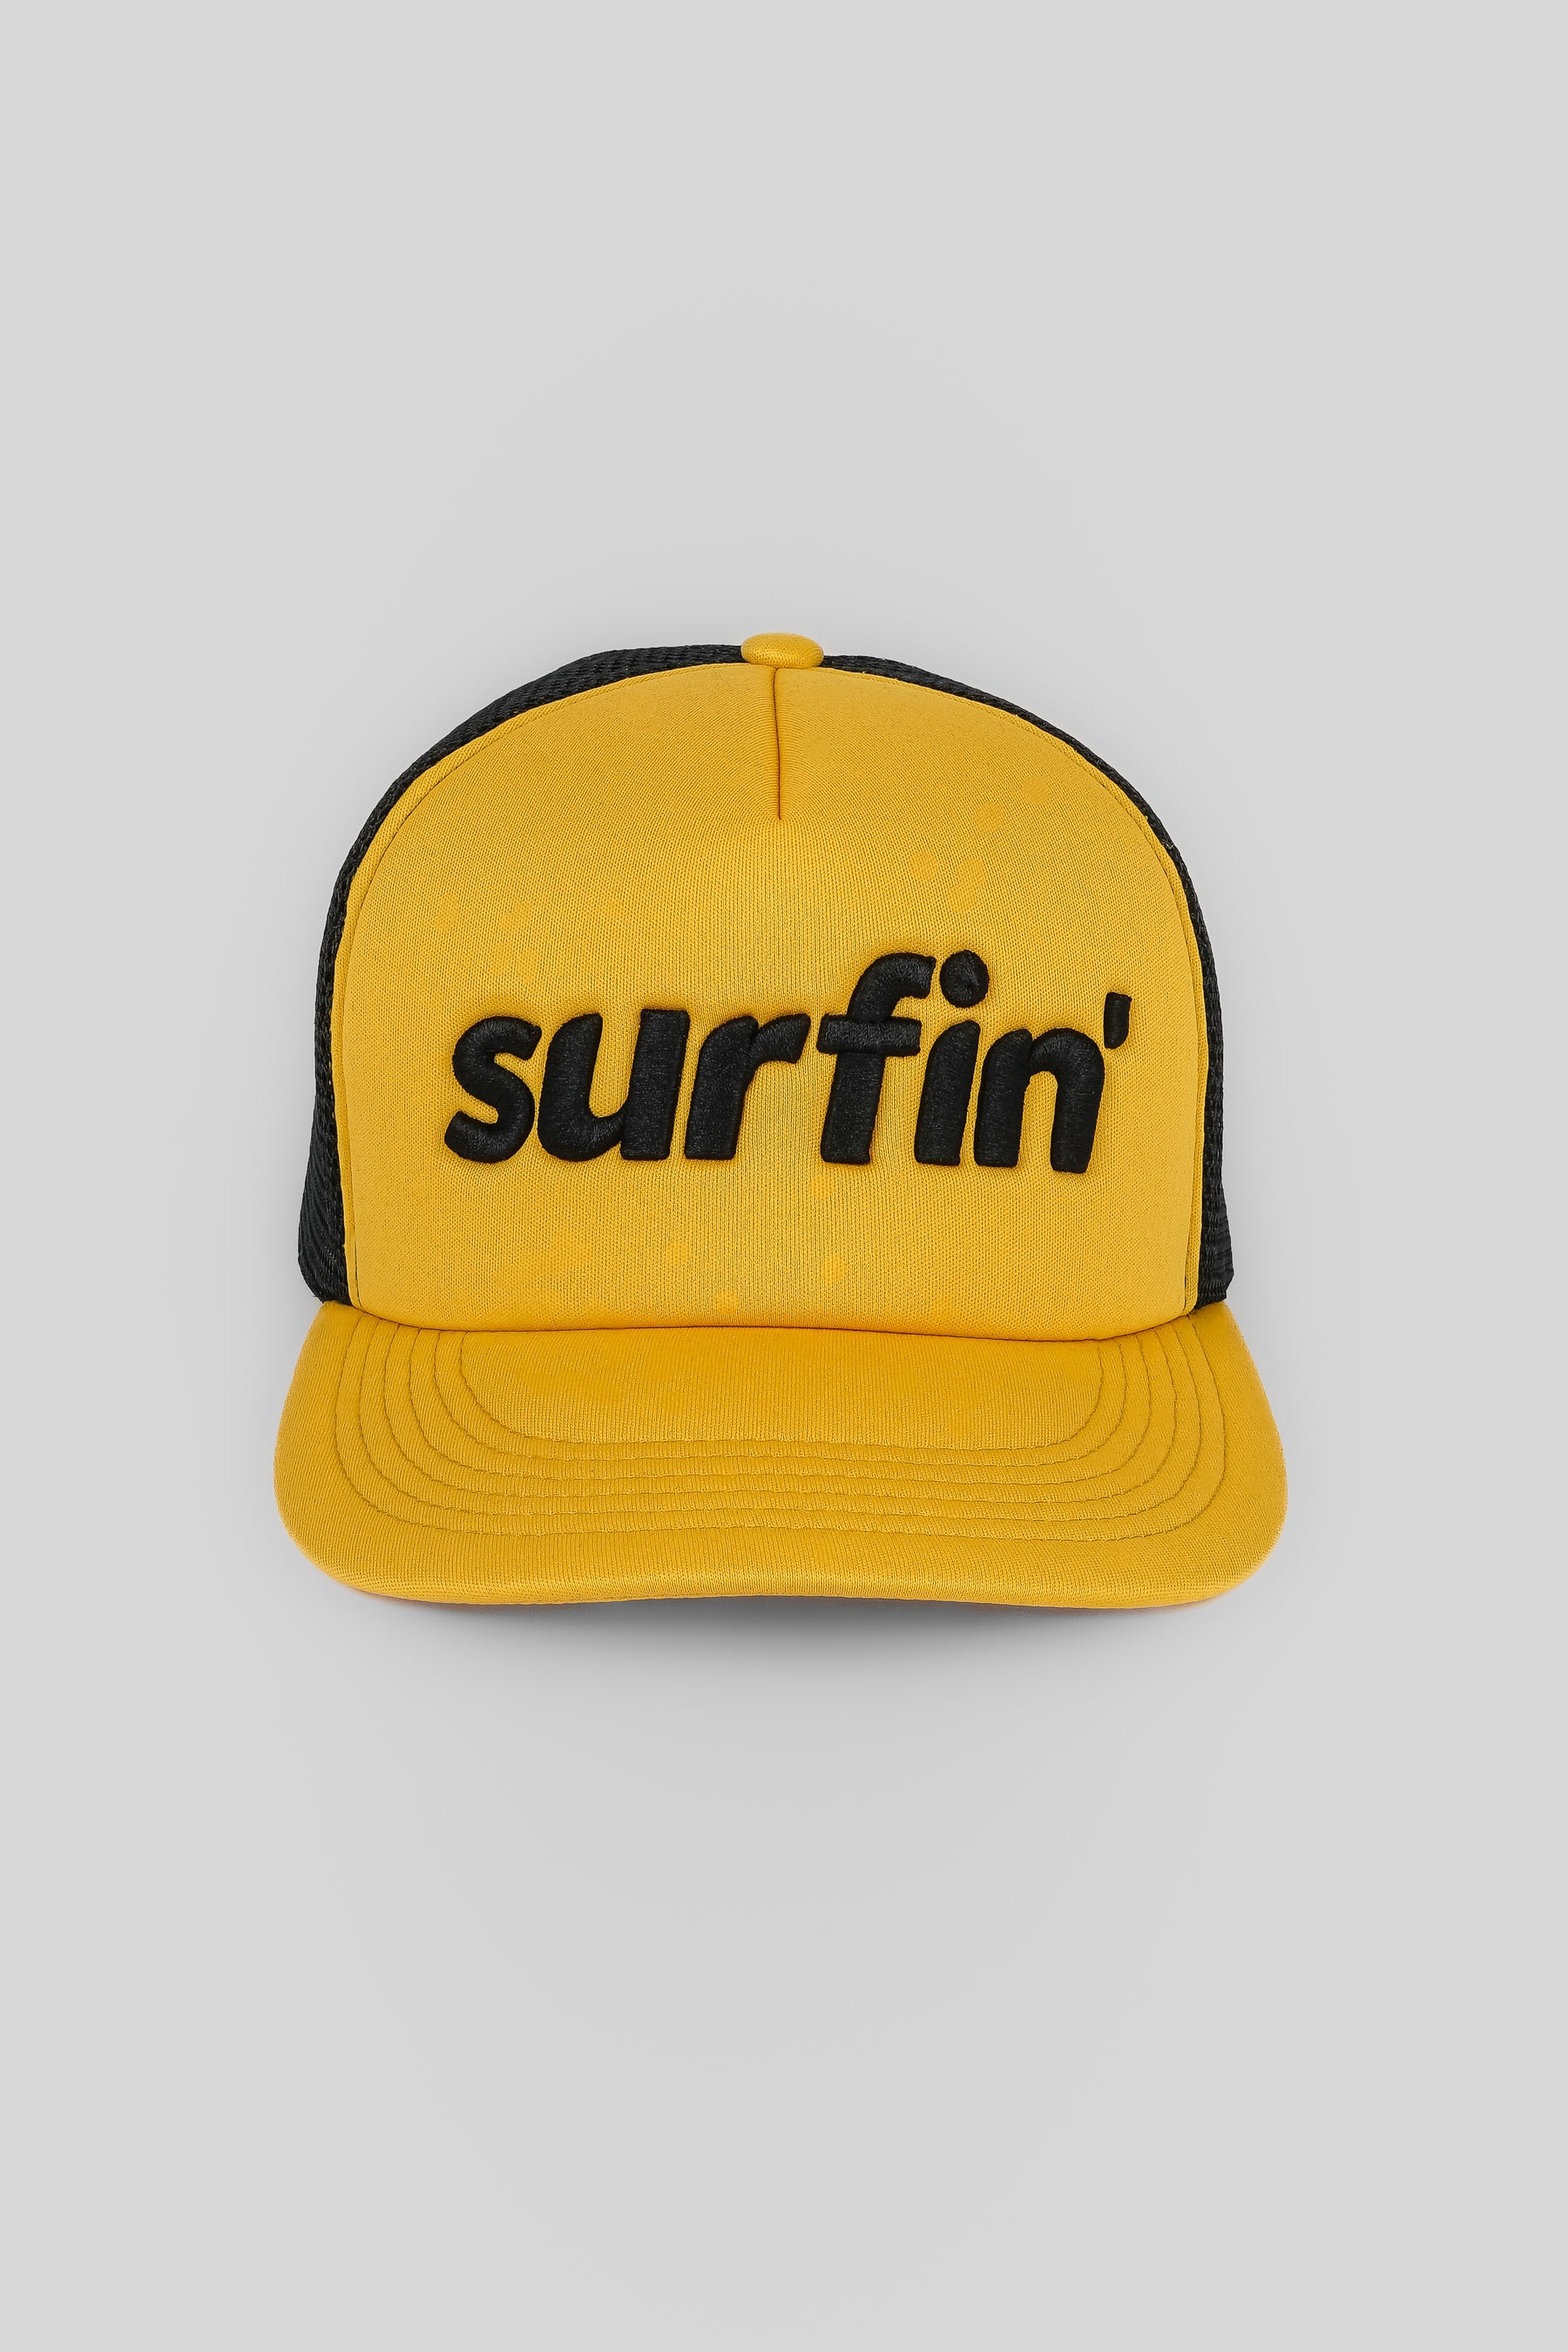 SURFIN' TRUCKER HAT